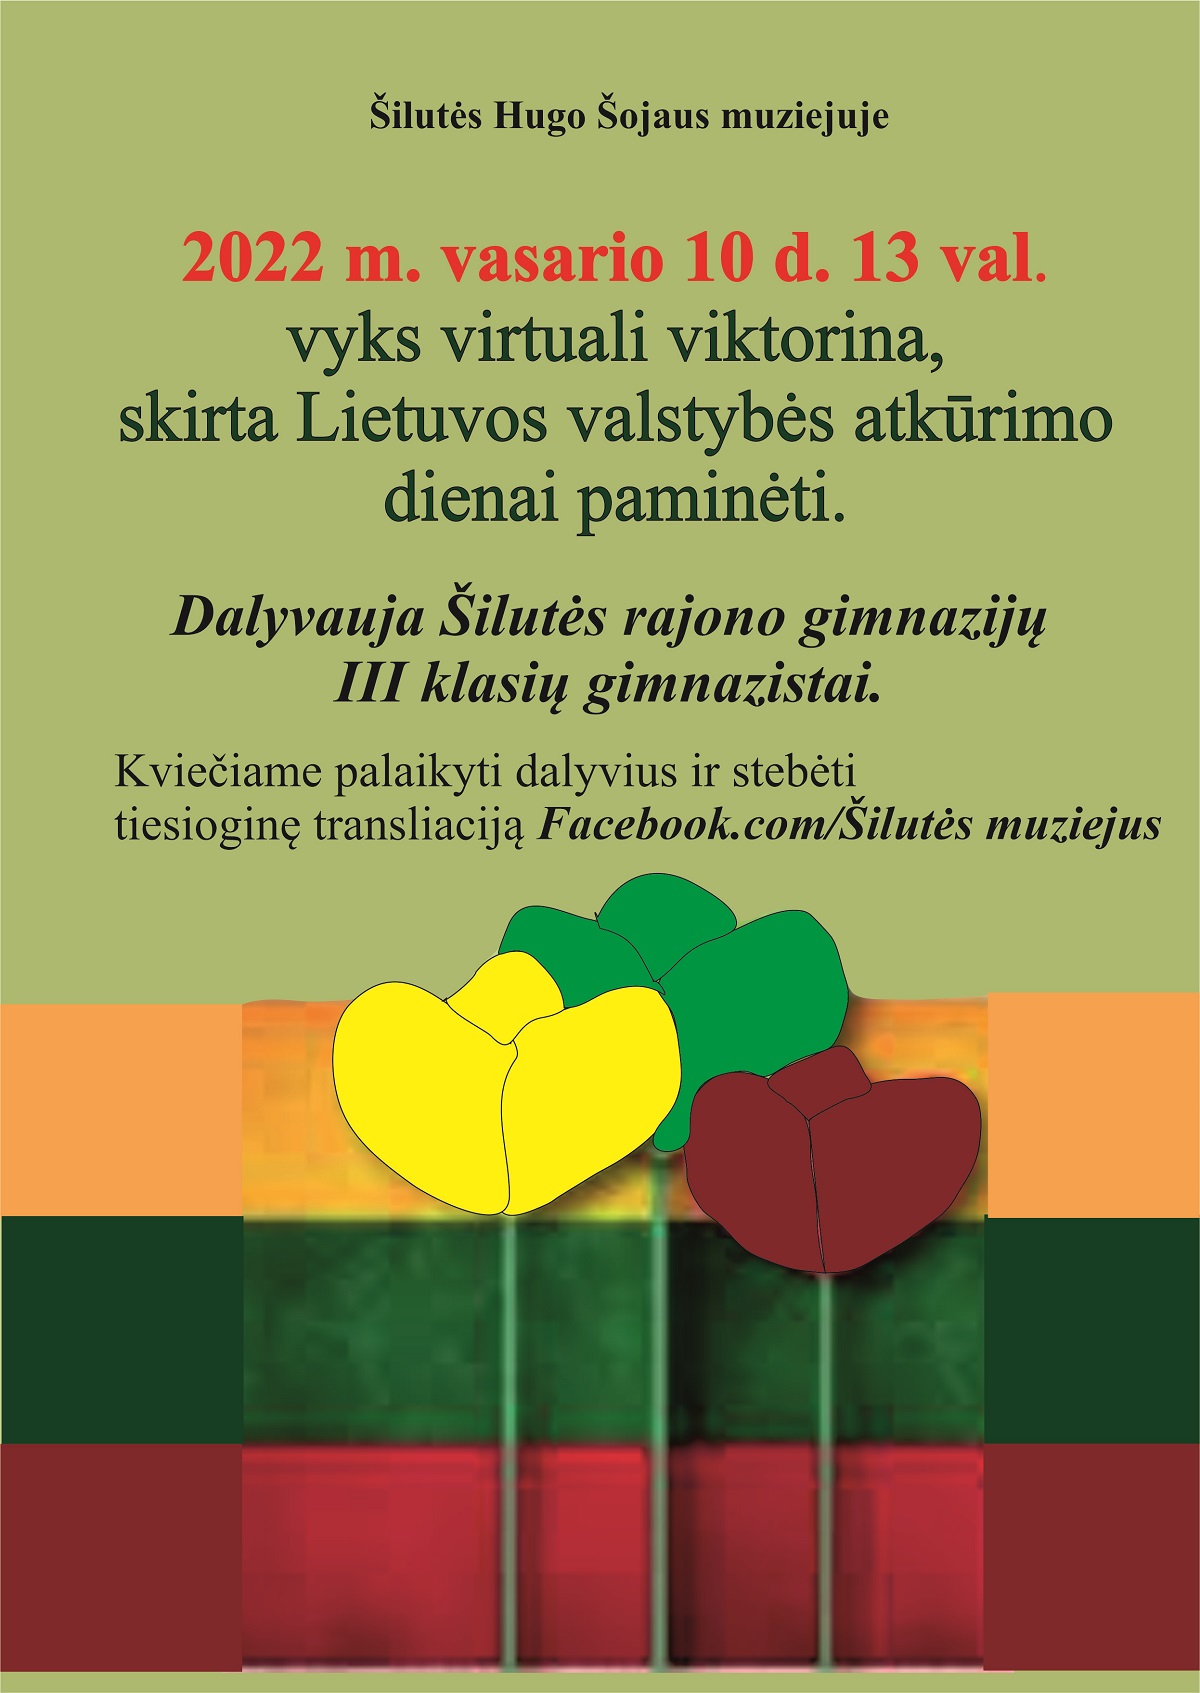 Vyks virtuali viktorina, skirta Lietuvos valstybės atkūrimo dienai paminėti